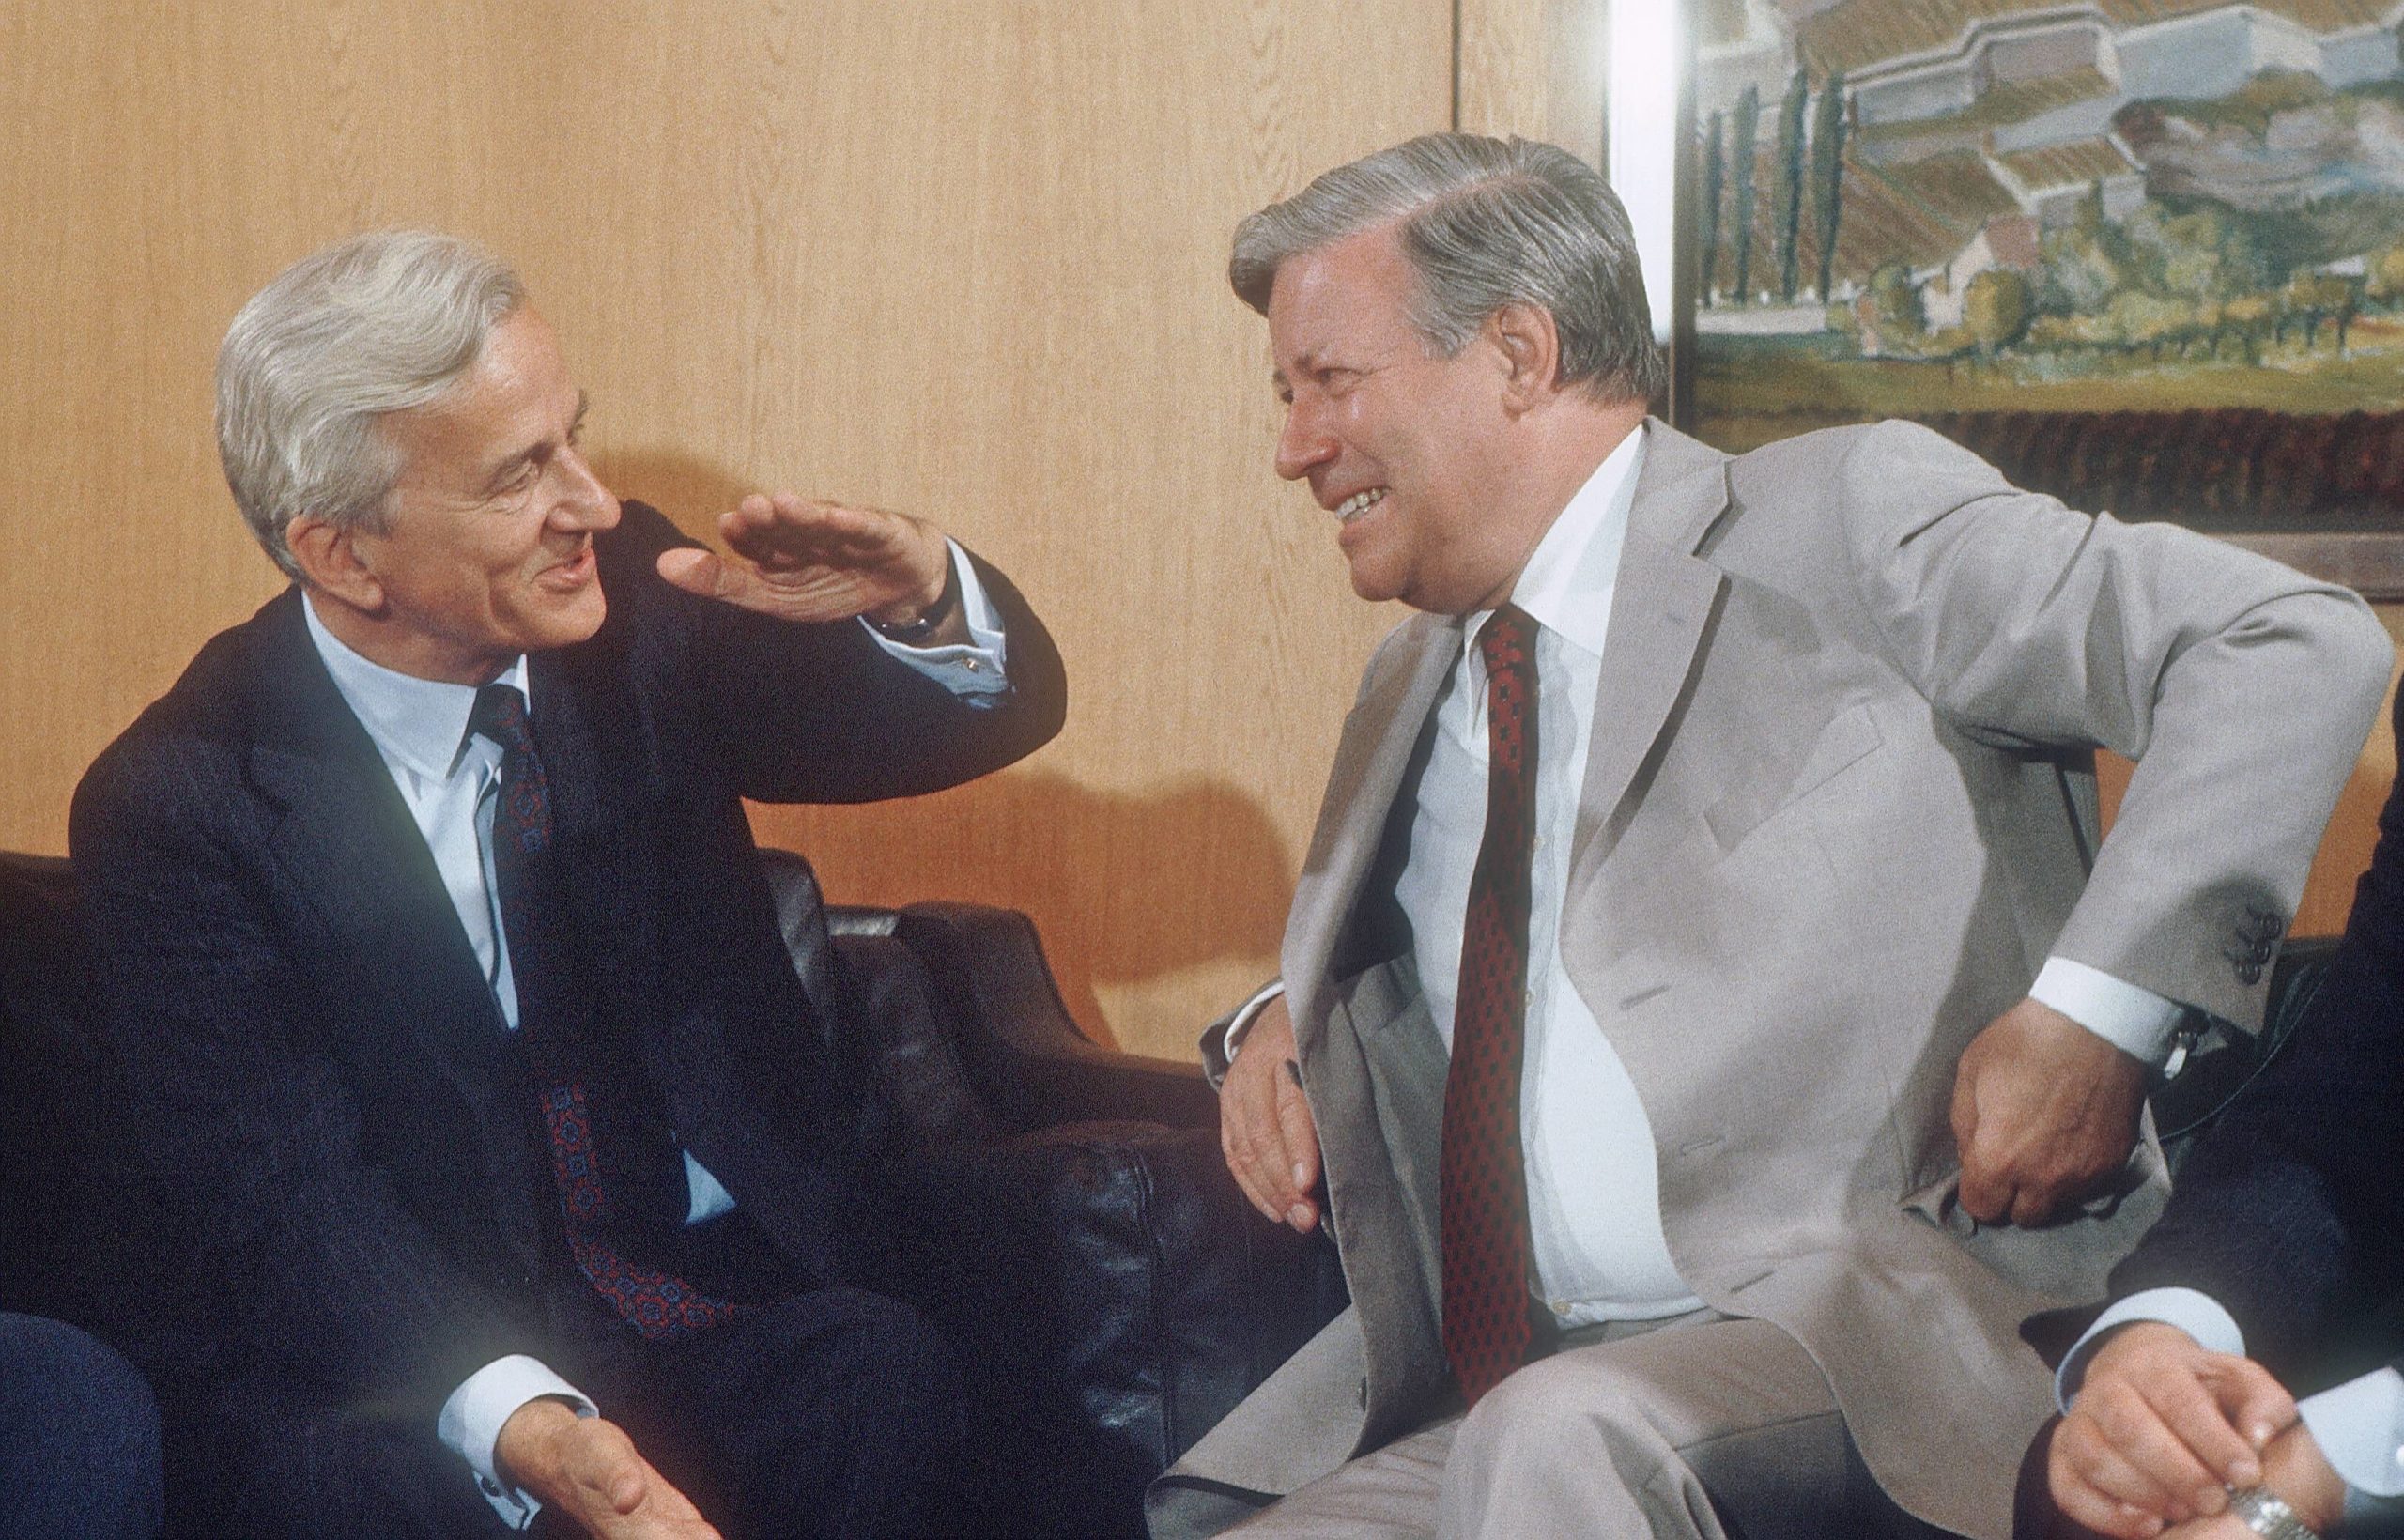 Bundeskanzler Helmut Schmidt (re., SPD), empfängt im Juli 1981 den frisch gewählten Regierenden Bürgermeister von Berlin Richard von Weizsäcker (li.). Foto: Imago/Photothek